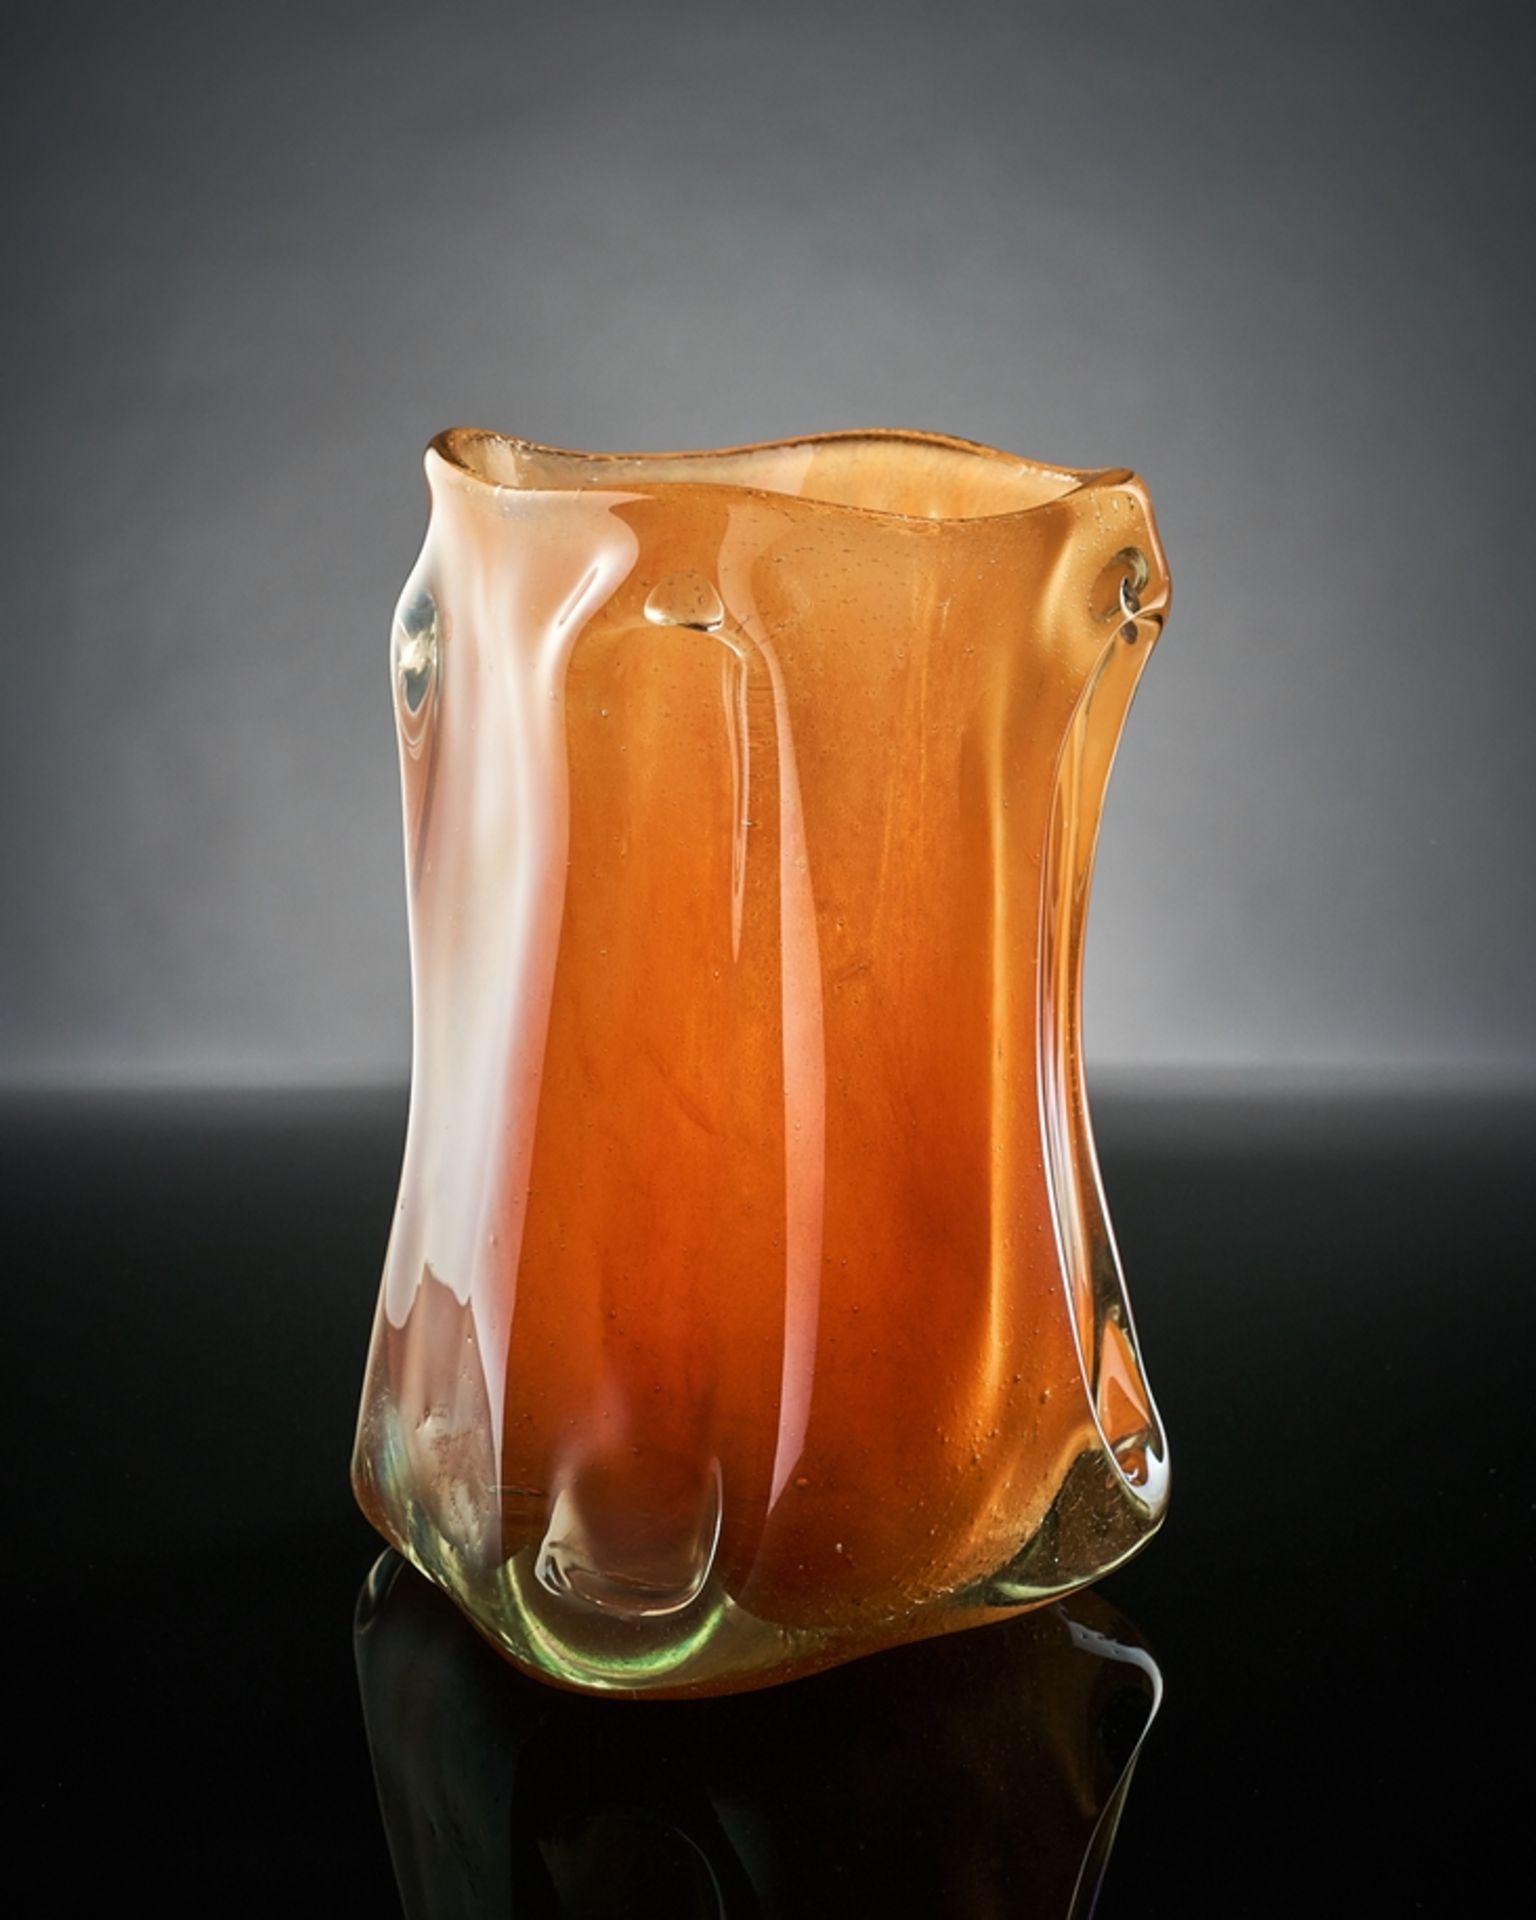 Quadratische Vase. Gekehlte Ecken, pulverisierte Einschmelzungen in Orange. Irisierende Teilätzunge